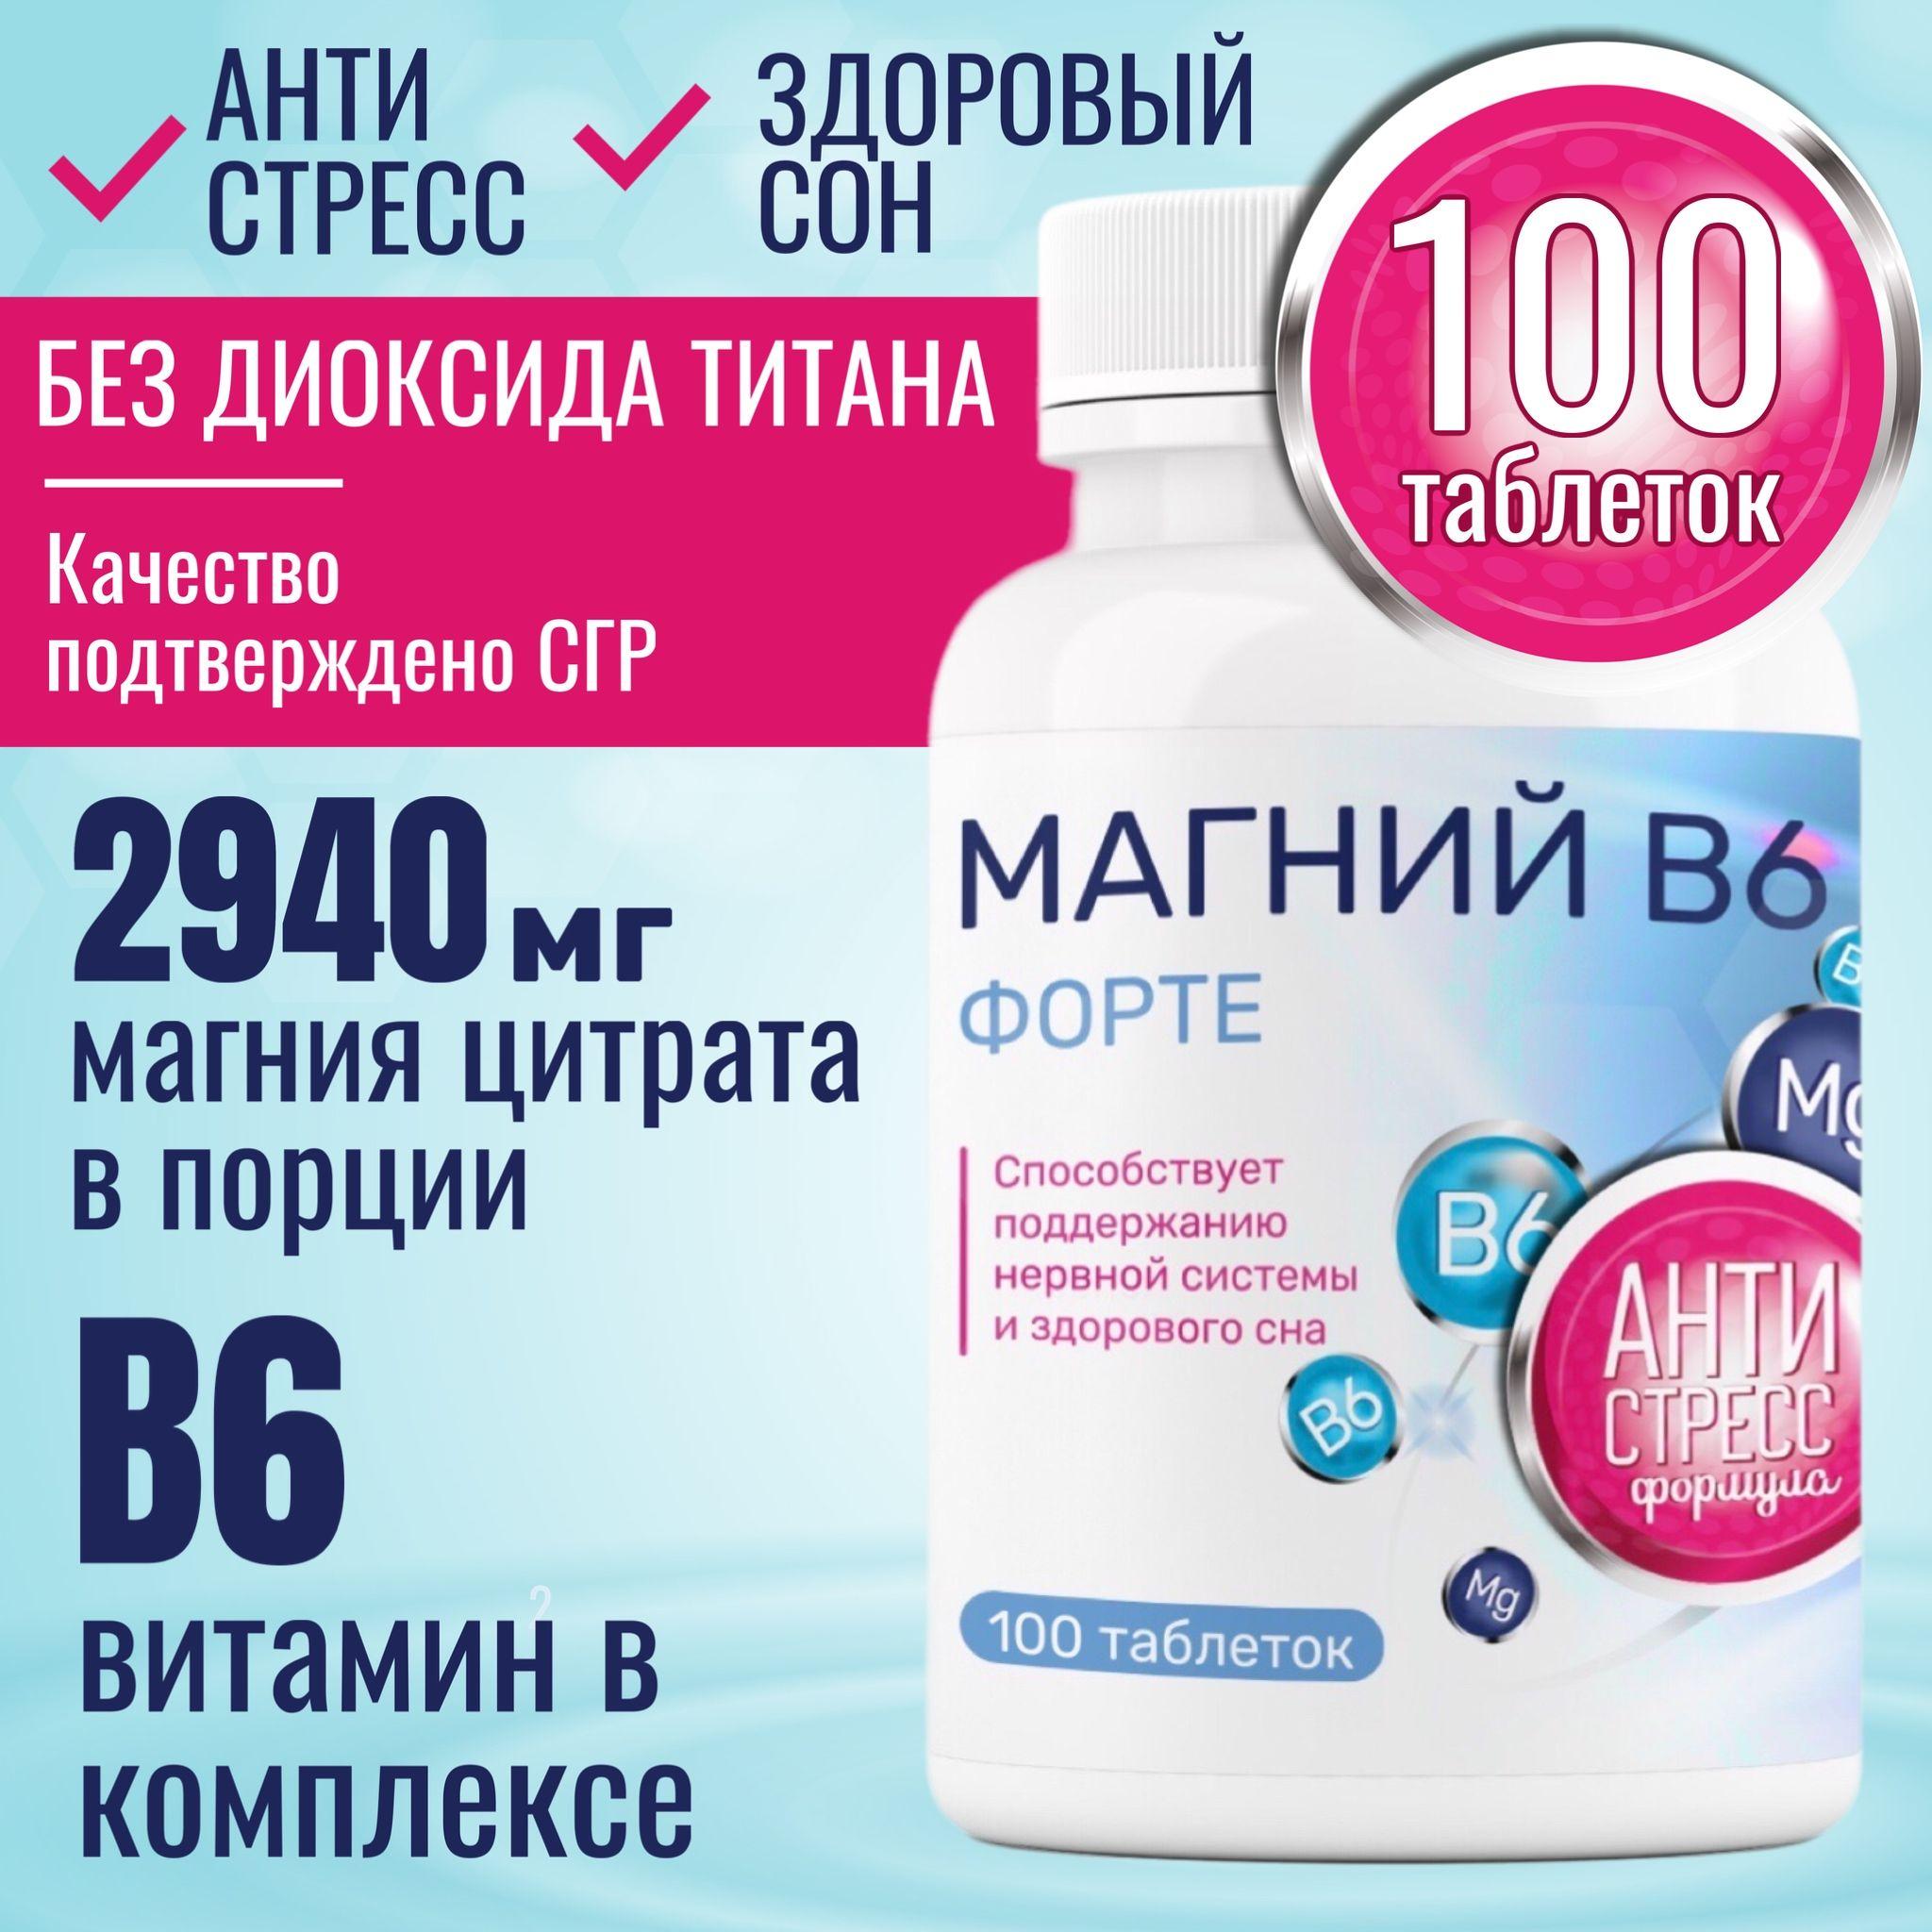 Miopharm | Магний В6 Форте Миофарм 100 т, 1000 мг. 735 мг магния цитрата в 1 таб + B6. От стресса, для нормализации сна. С витамином В6, витамины. Успокоительное средство. Успокоительное.